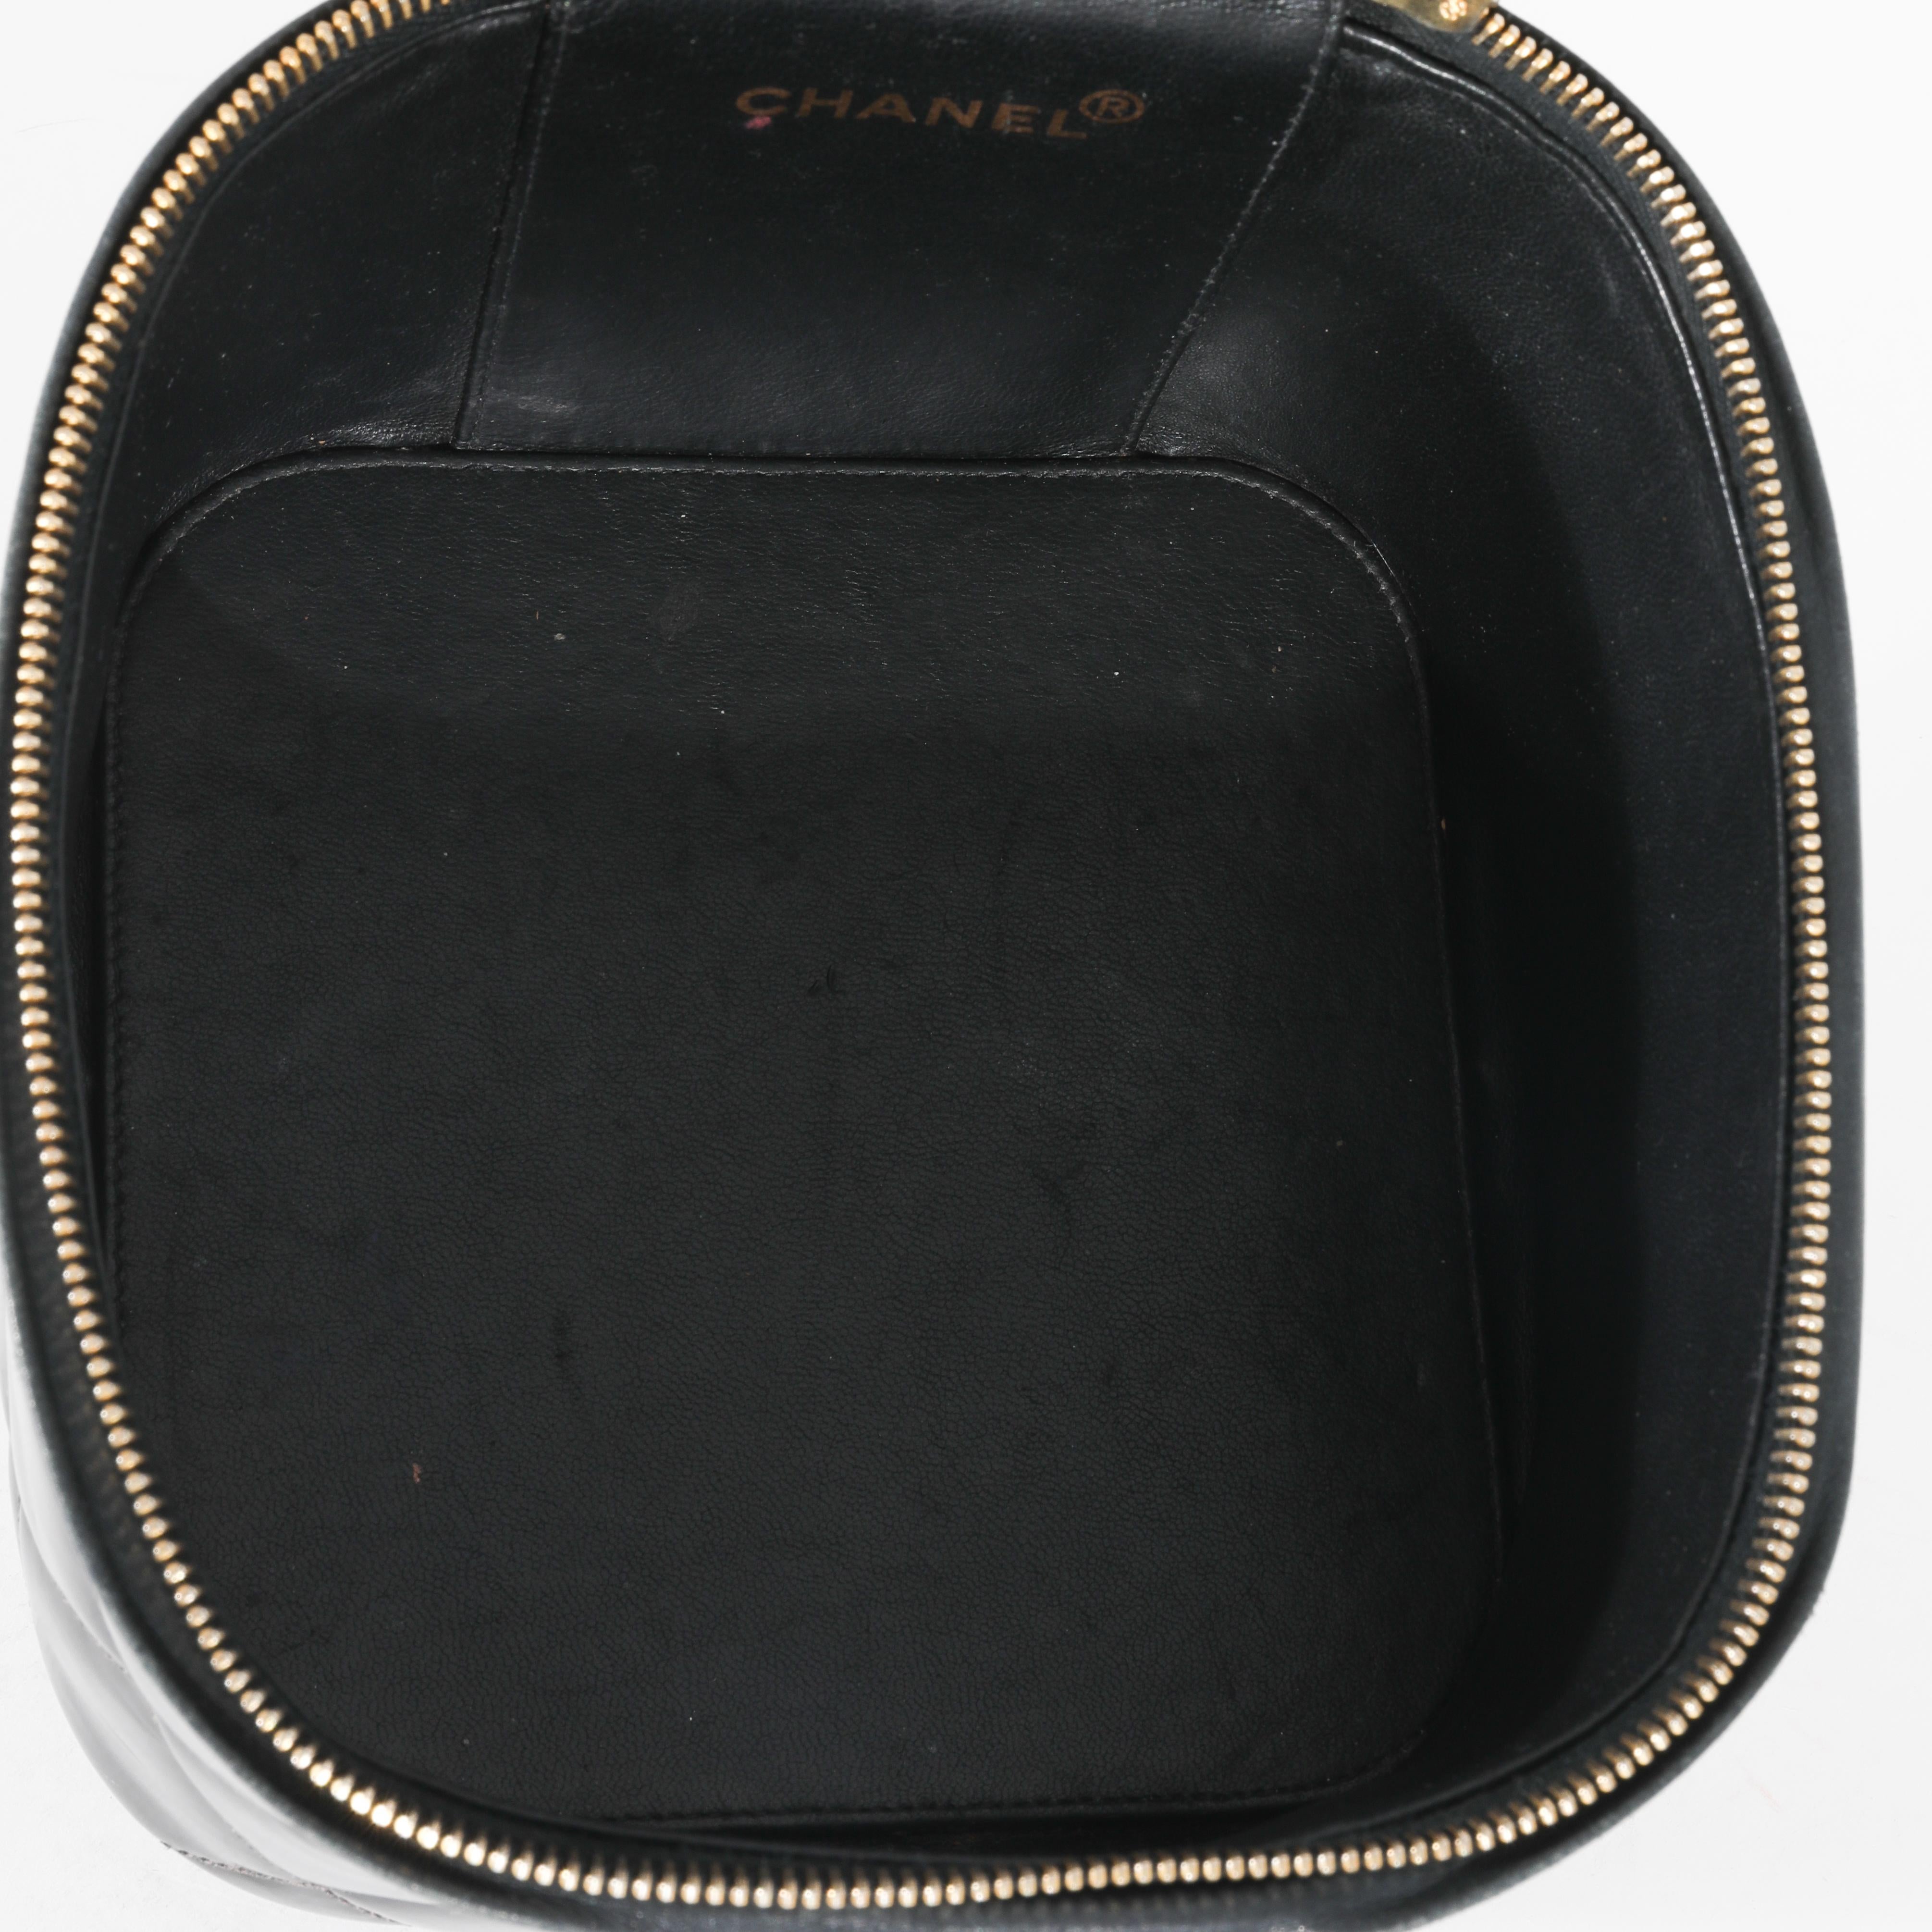 Auflistung Titel: Chanel Vintage 24K Black Patent CC Schminkkoffer
SKU: 130524
Zustand: Gebraucht 
Handtasche Zustand: Fair
Bemerkungen zum Zustand: Angemessener Zustand. Erhebliche Verfärbungen, Abnutzungen an den Griffen und im gesamten Bereich.